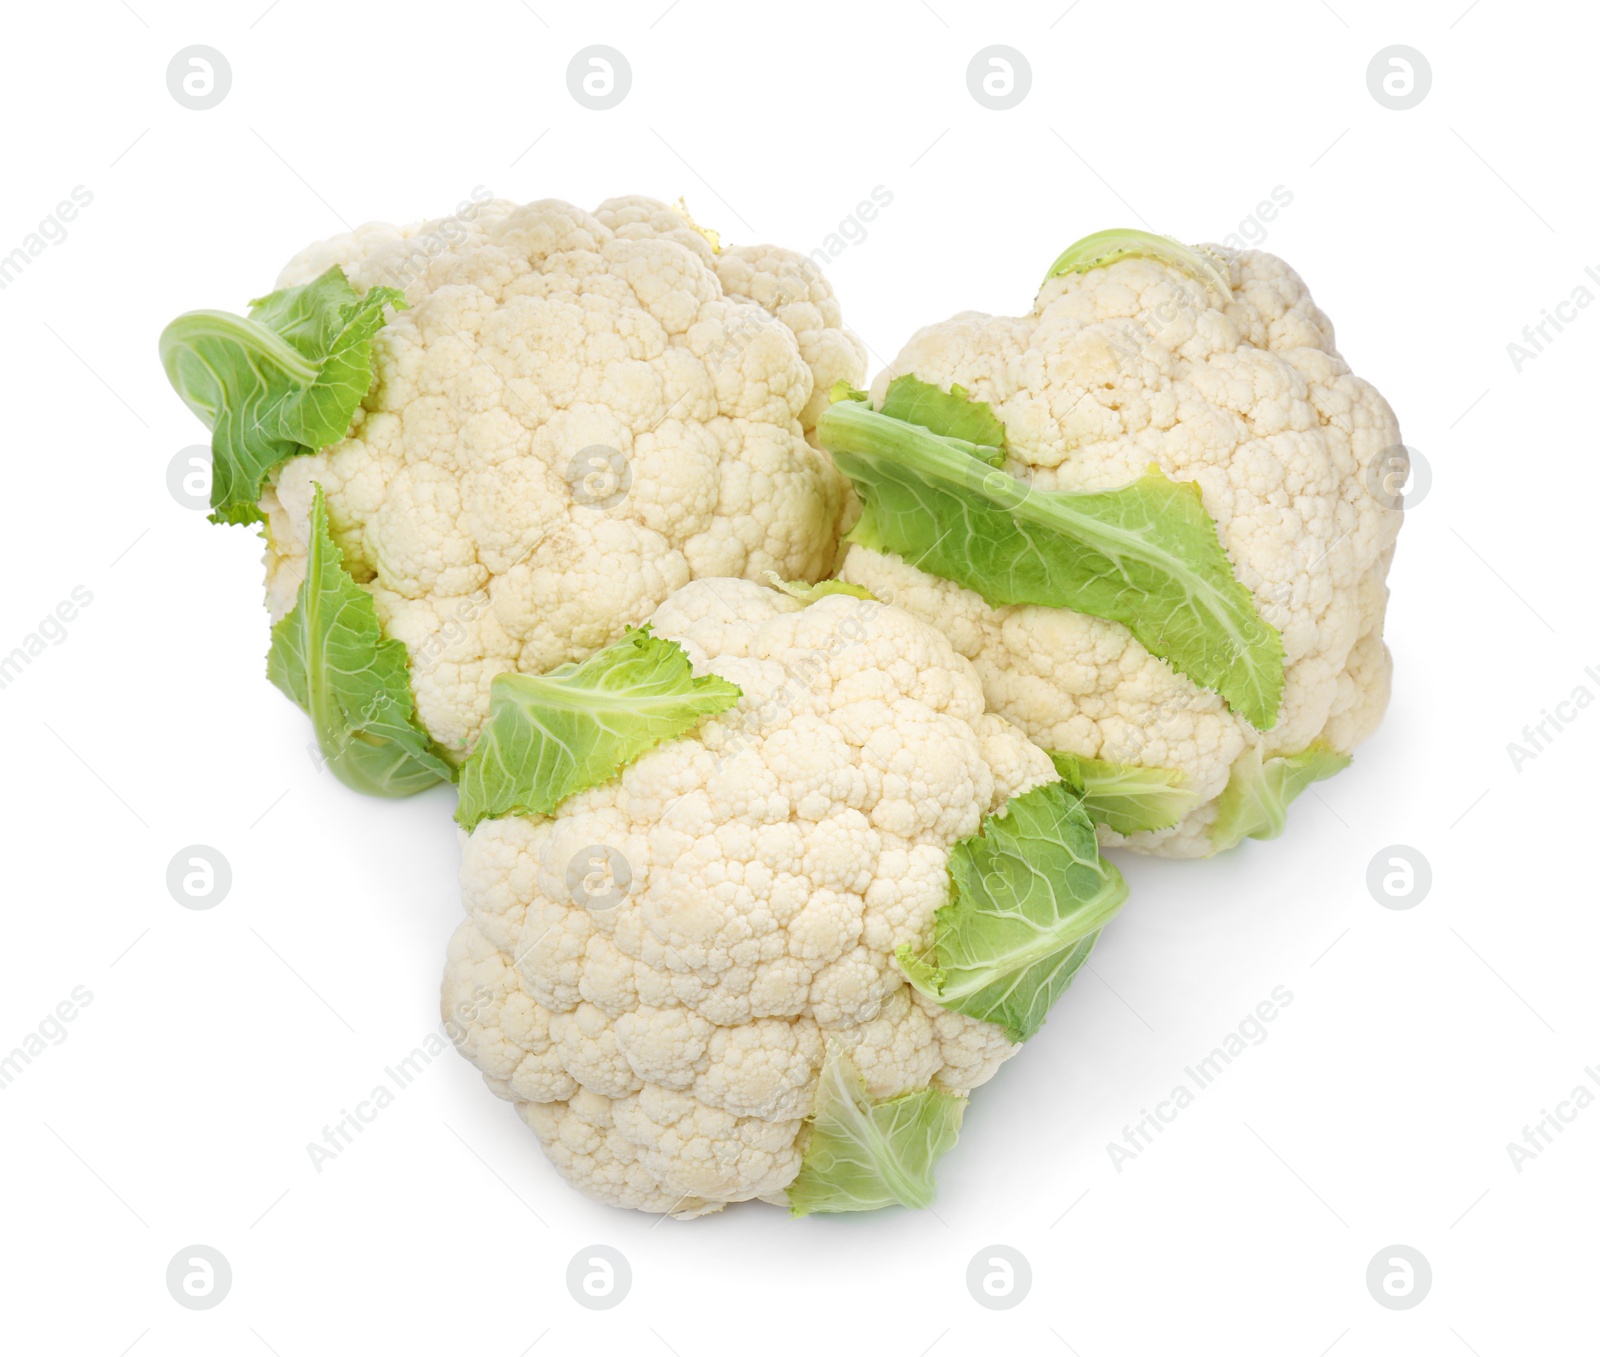 Photo of Whole fresh raw cauliflowers on white background